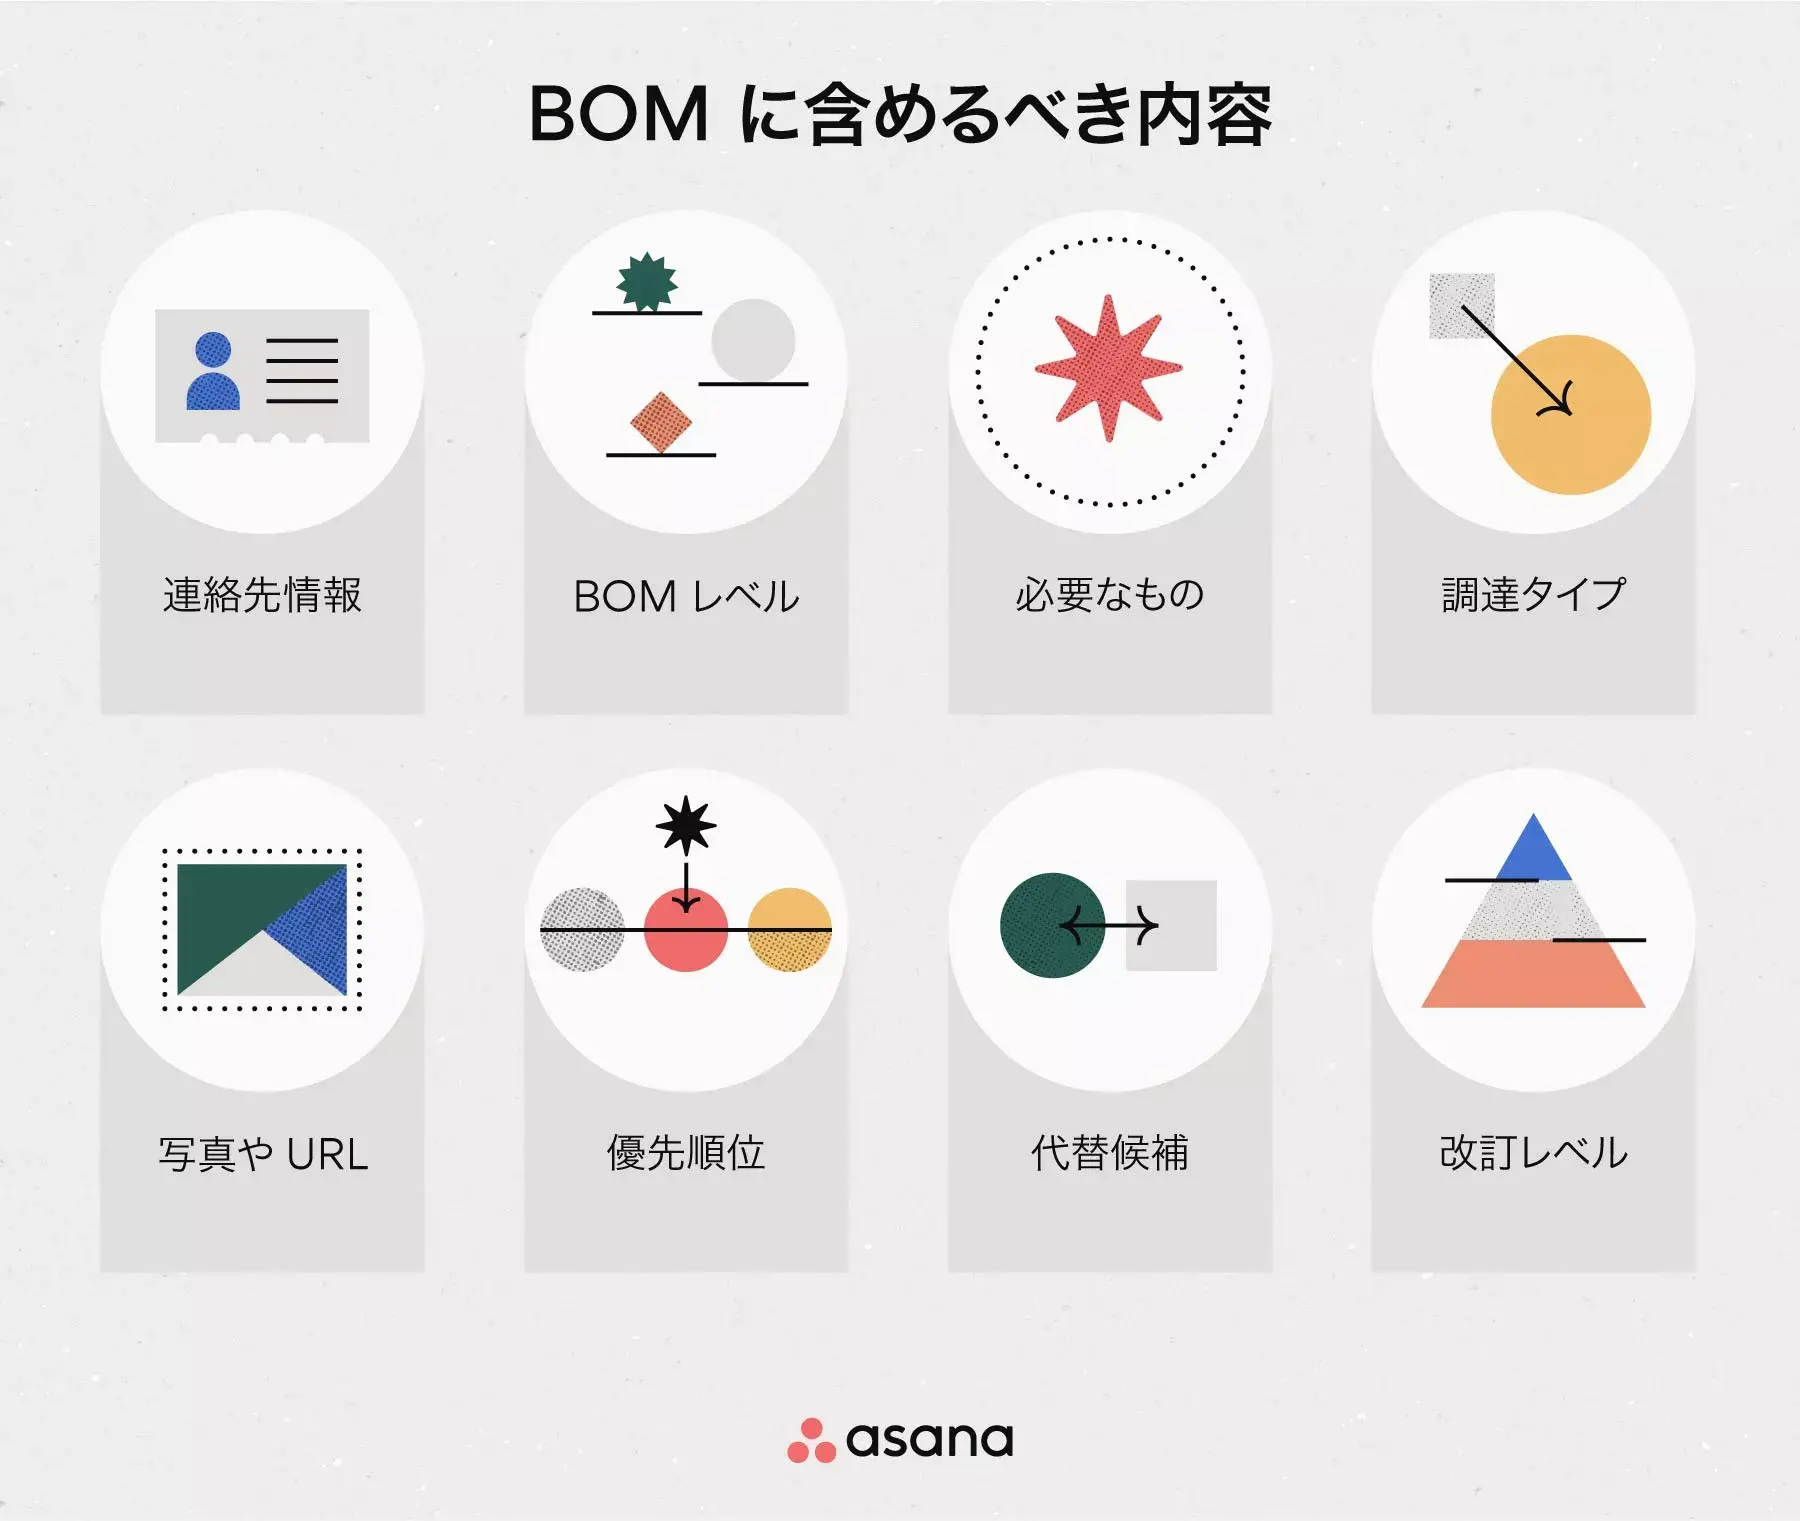 [インラインのイラスト] BOM に記載する内容 (インフォグラフィック)